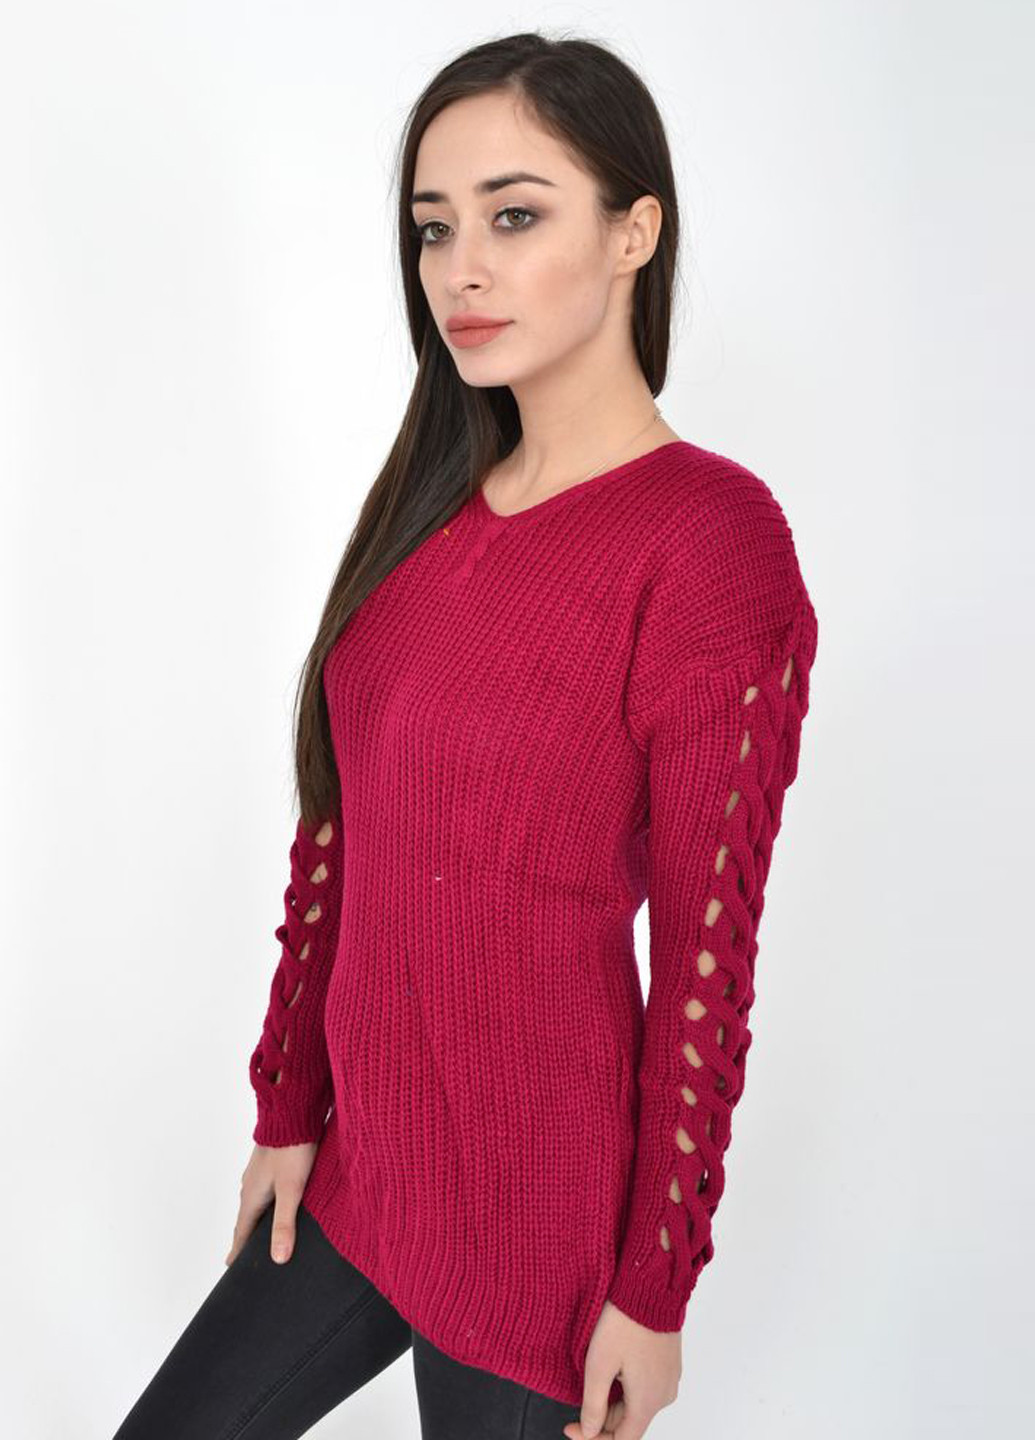 Фуксиновый демисезонный пуловер пуловер Ager